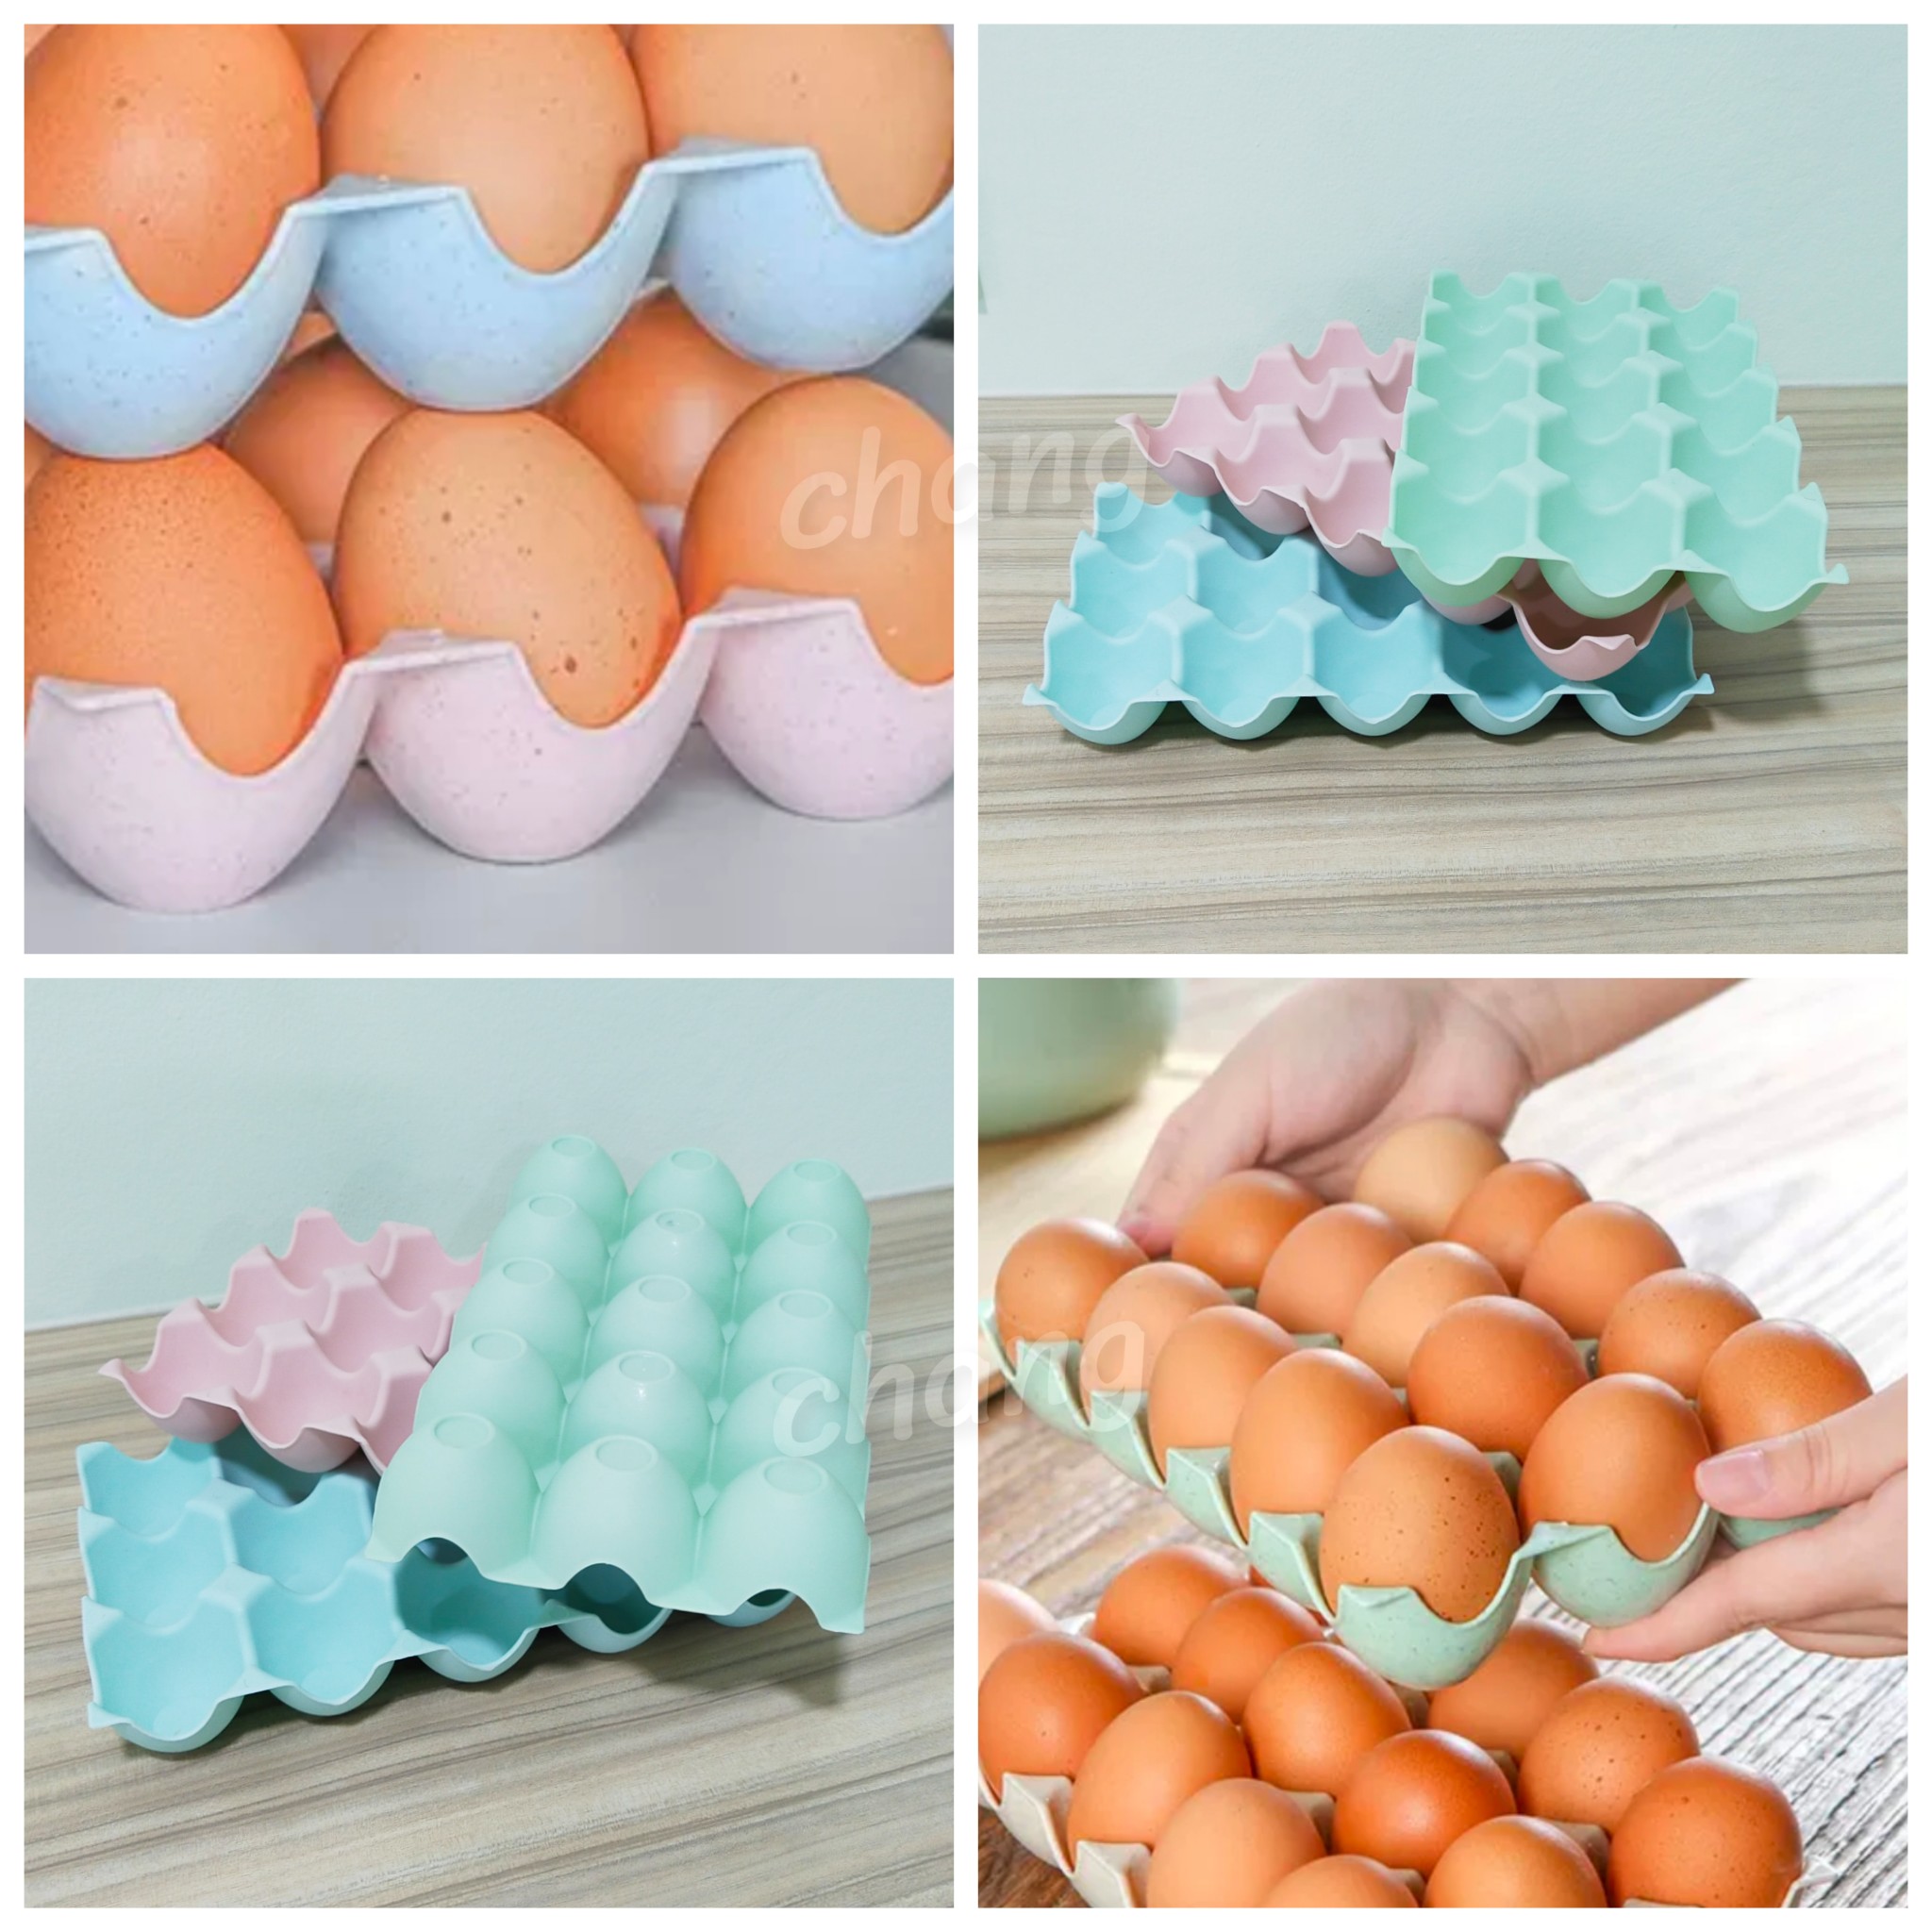 ถาด ใส่ไข่ วางไข่ ถาดไข่พลาสติก ที่ใส่ไข่ CH0641 ?โปรดอ่านรายละเอียดก่อนสั่งซื้อค่ะ